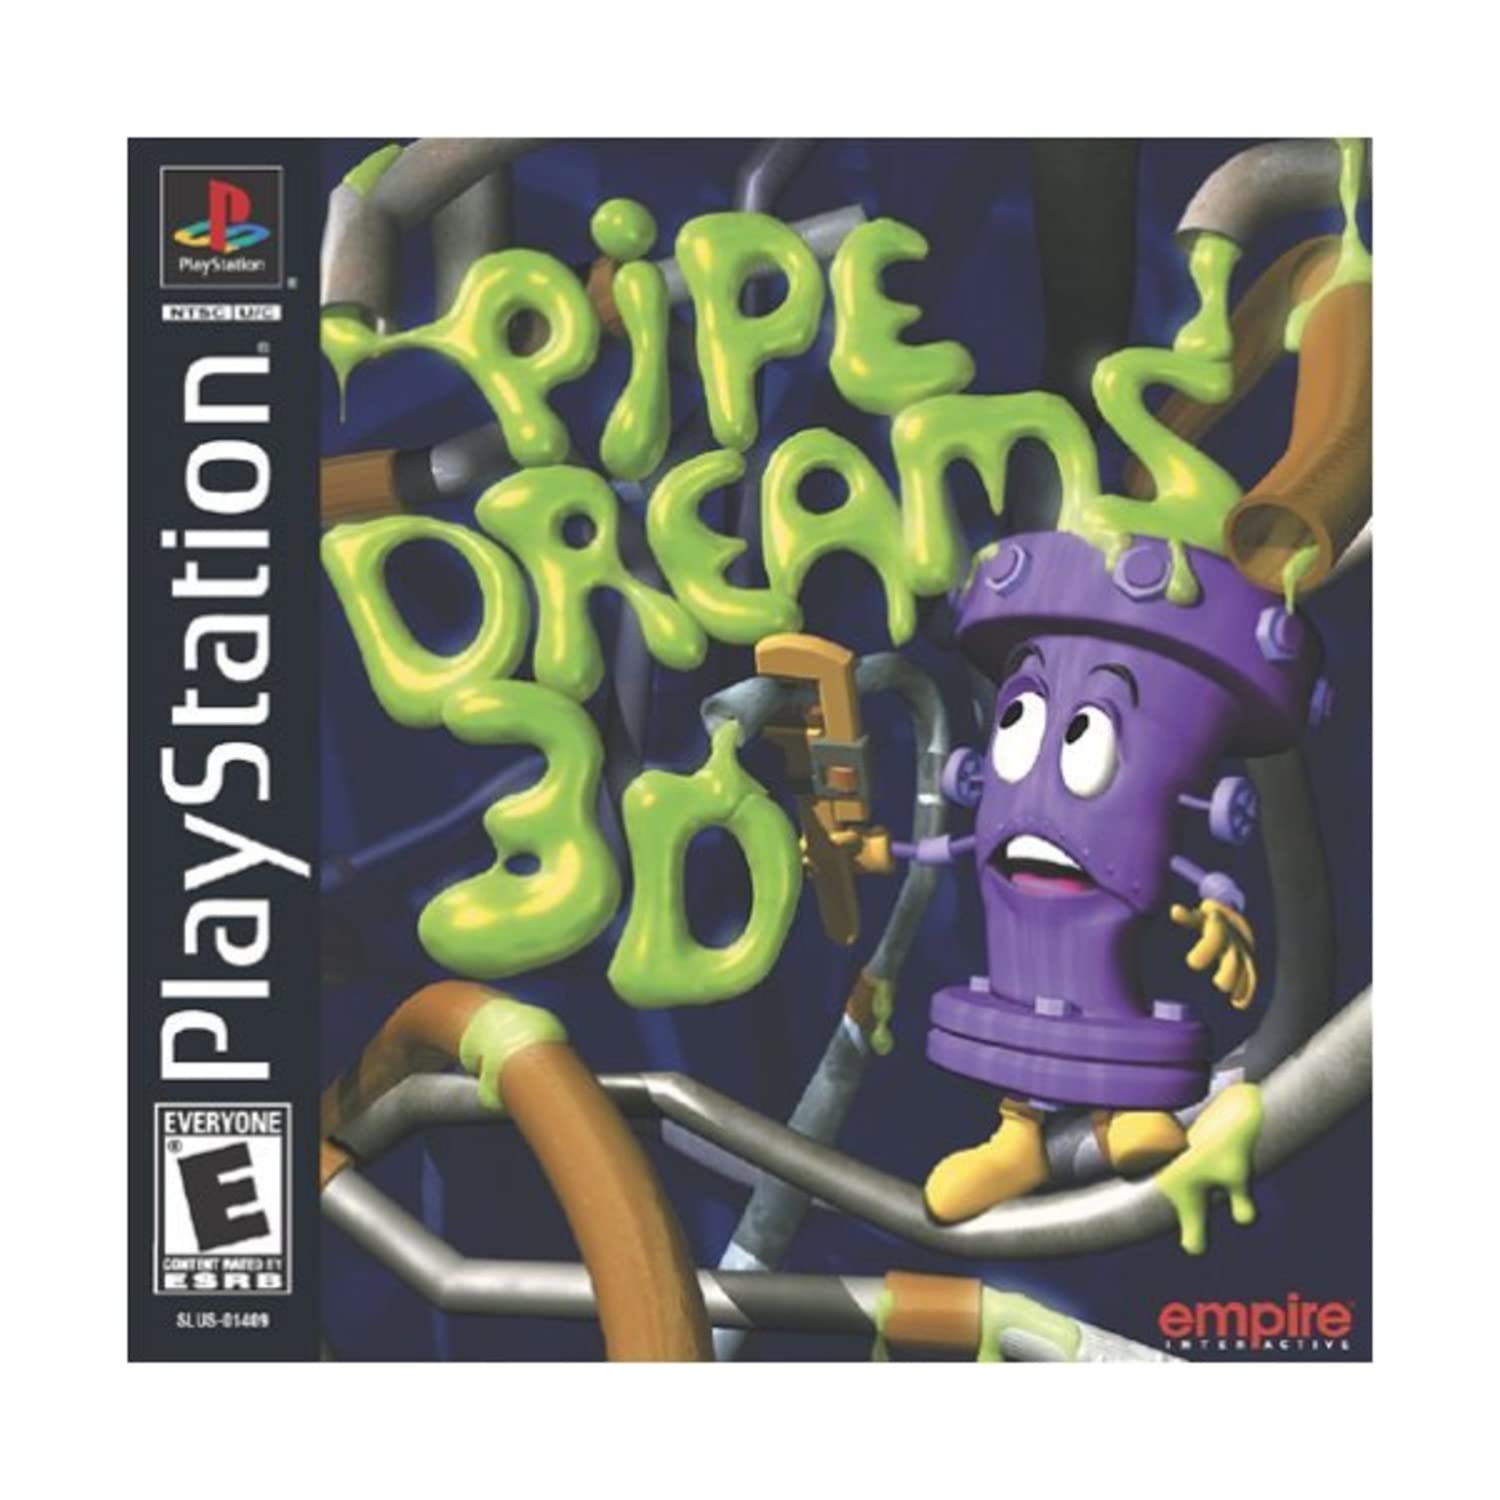 Pipe Dreams 3D